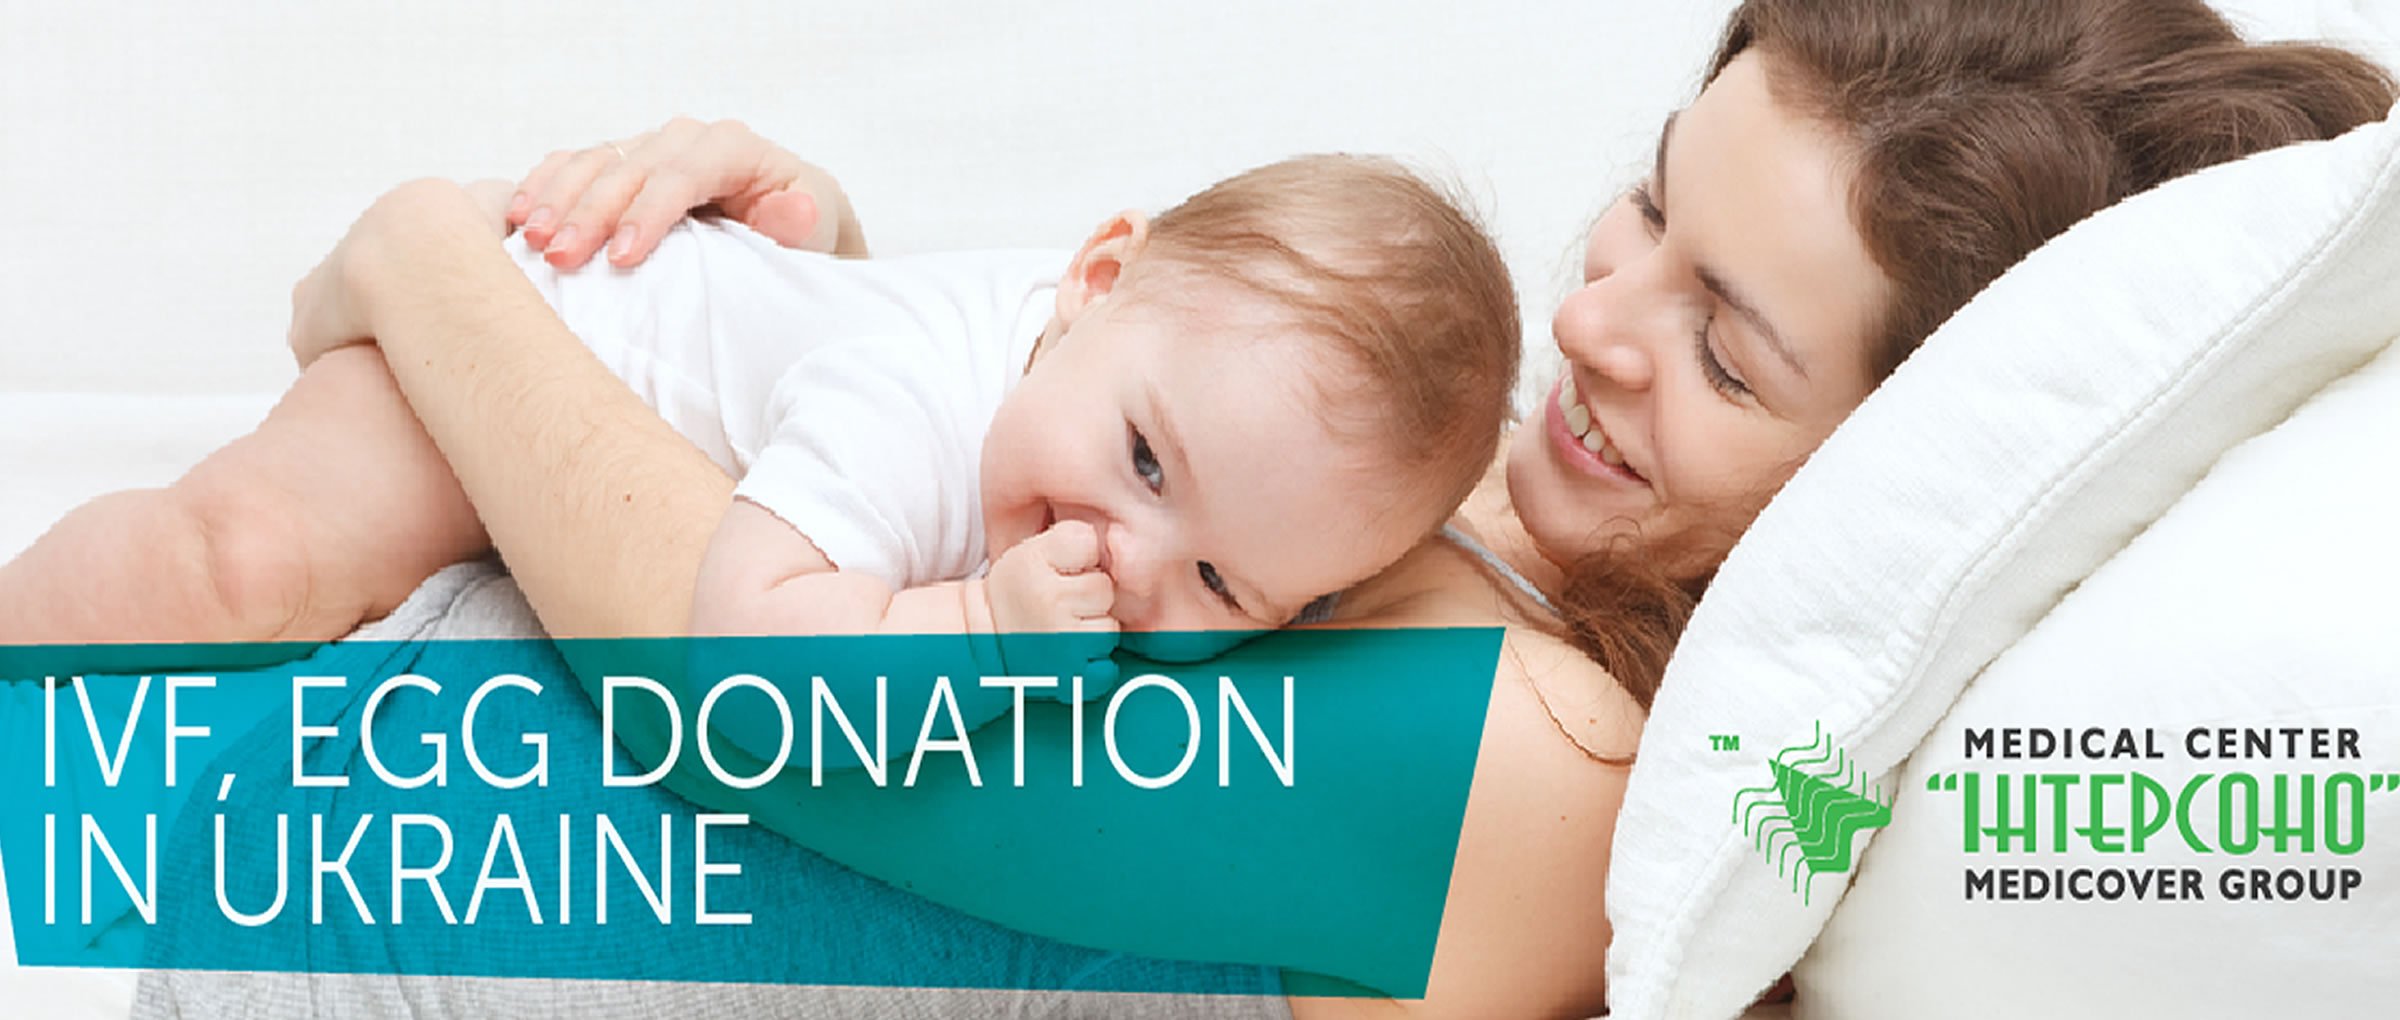 Medical Center Intersono FIV donazione di ovuli Ucraina